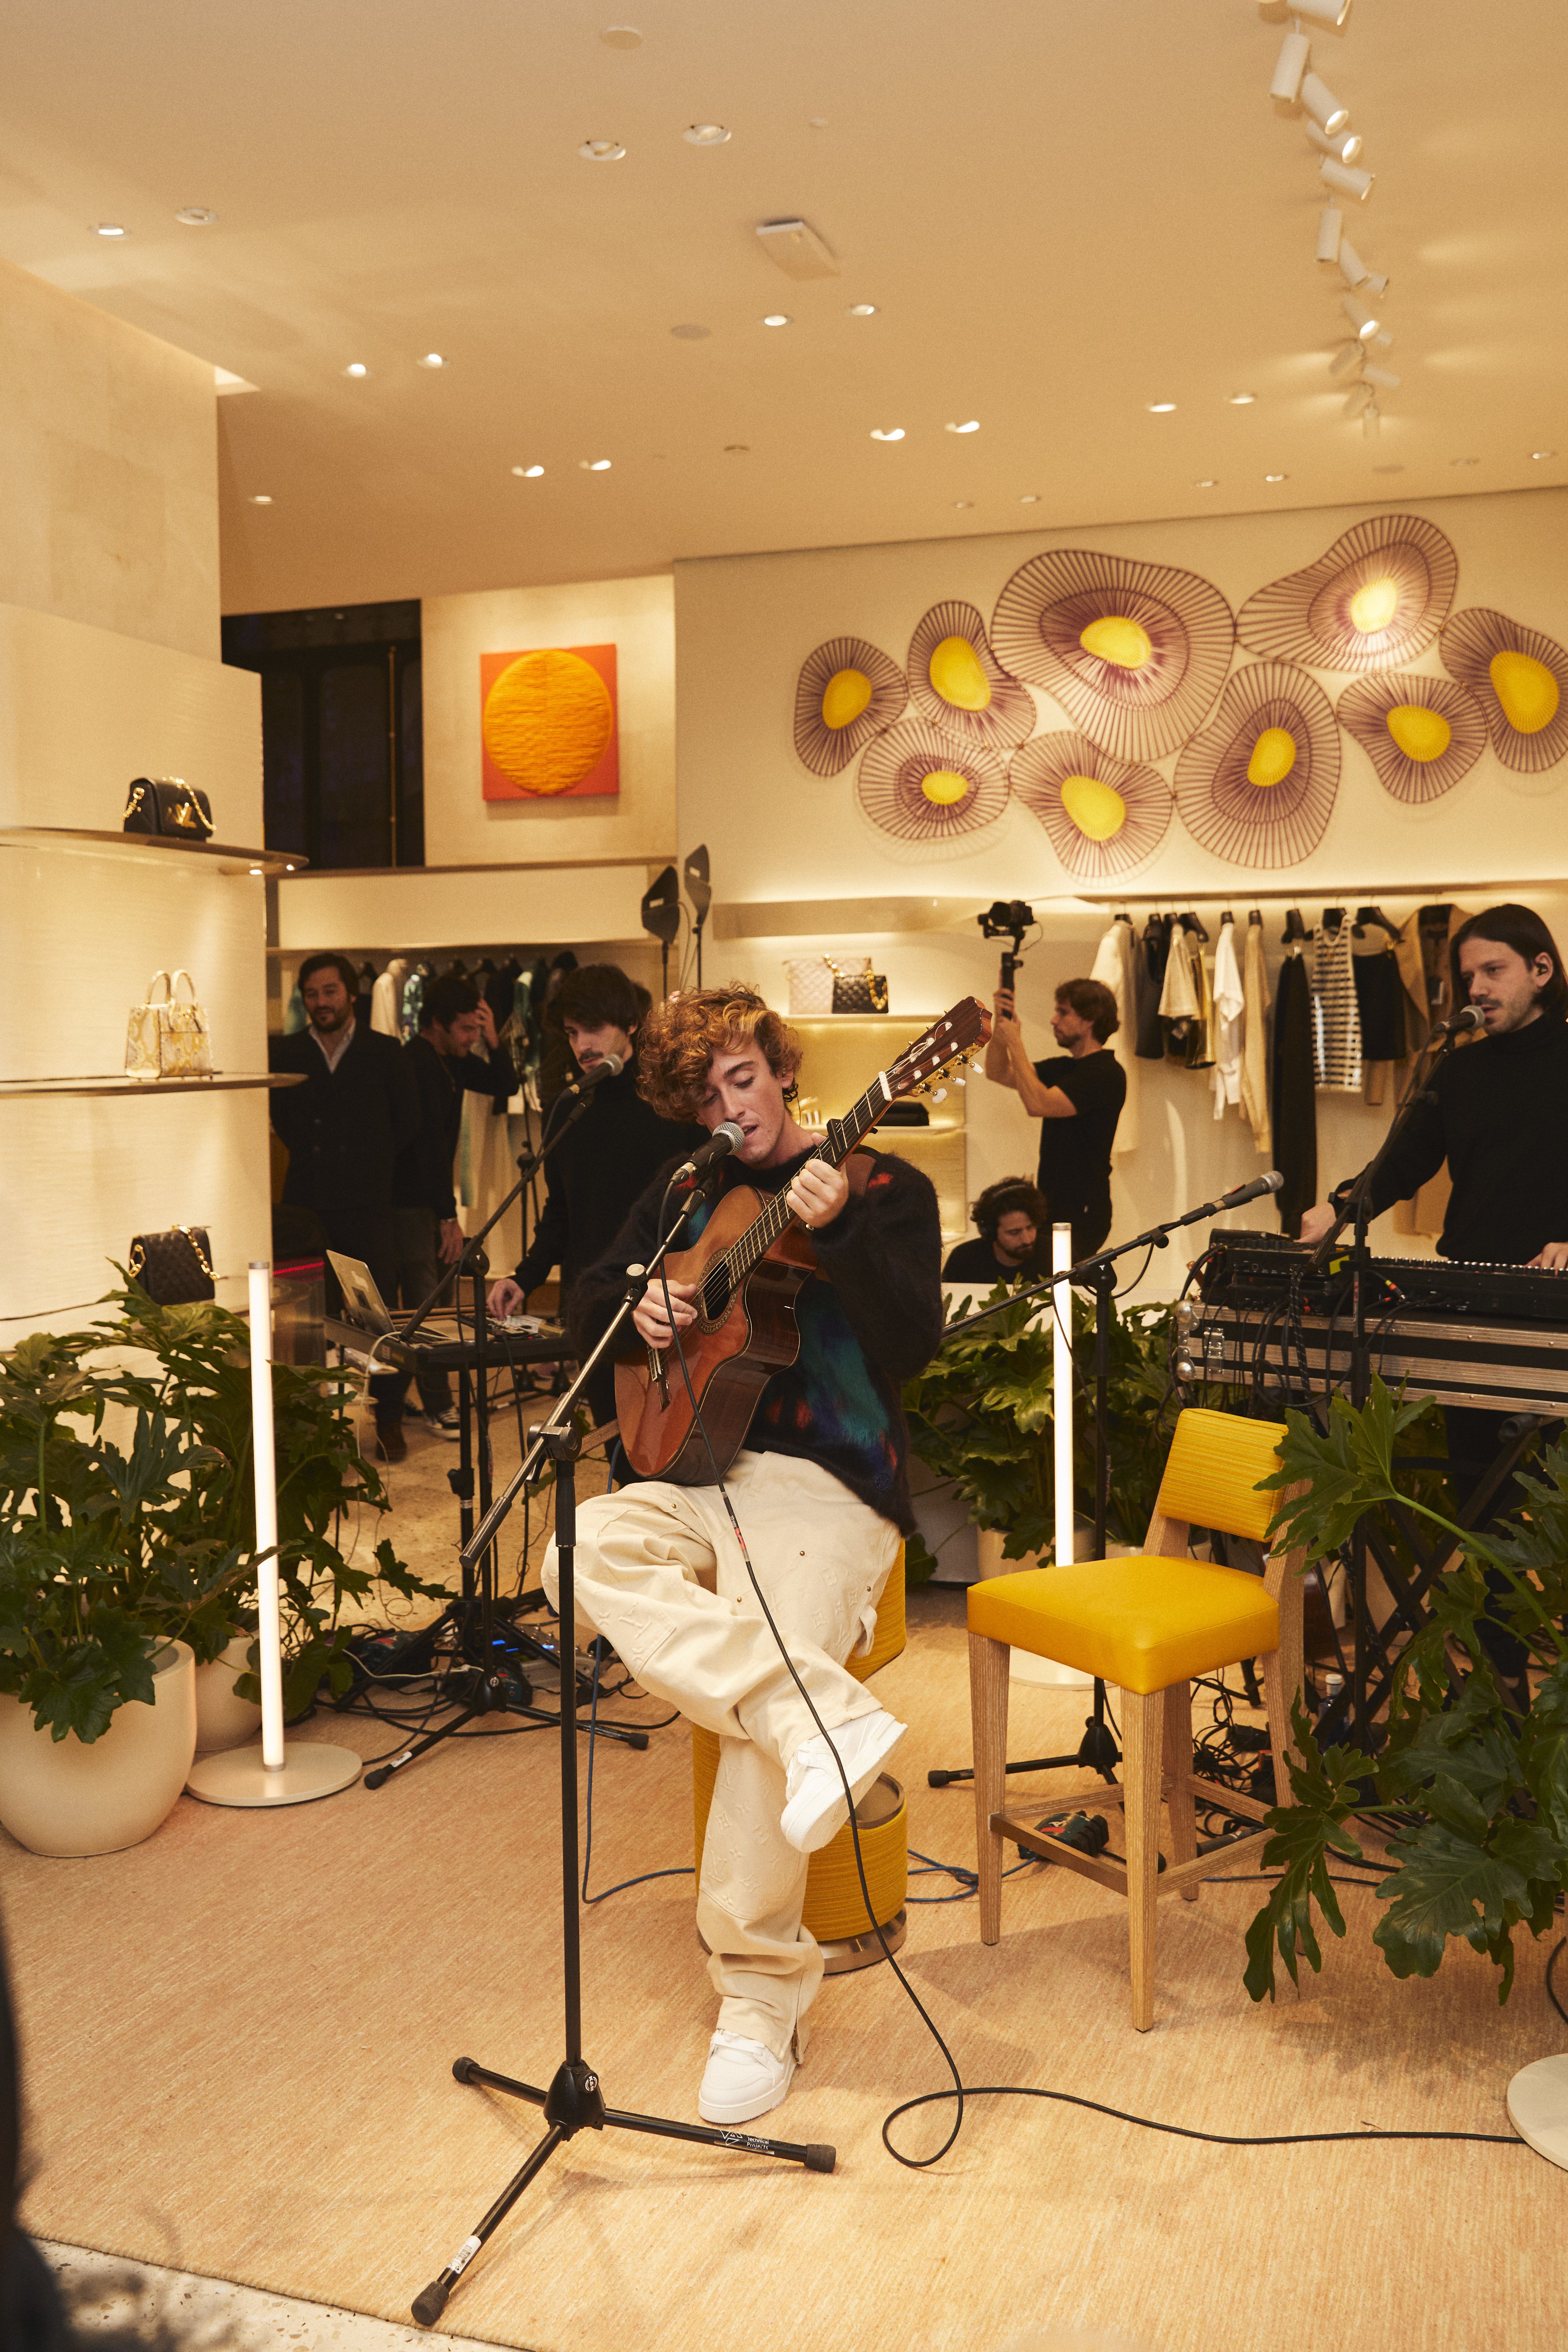 La flamante apertura de Louis Vuitton en Madrid, la Alta Joyería